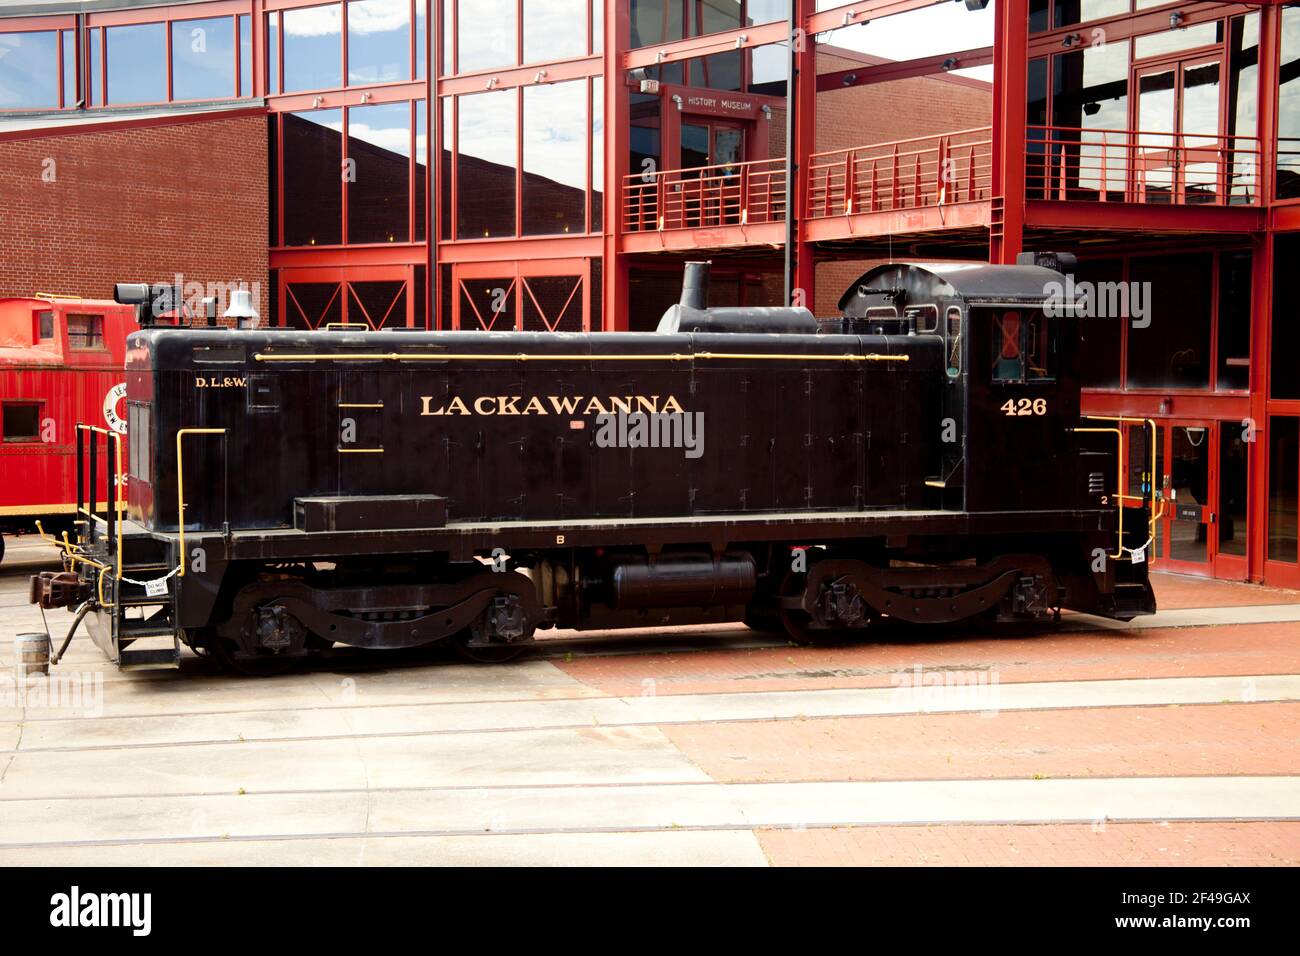 Sito storico nazionale di Steamtown, Pennsylvania, Stati Uniti. Locomotiva Lackawanna 426 restaurata Foto Stock